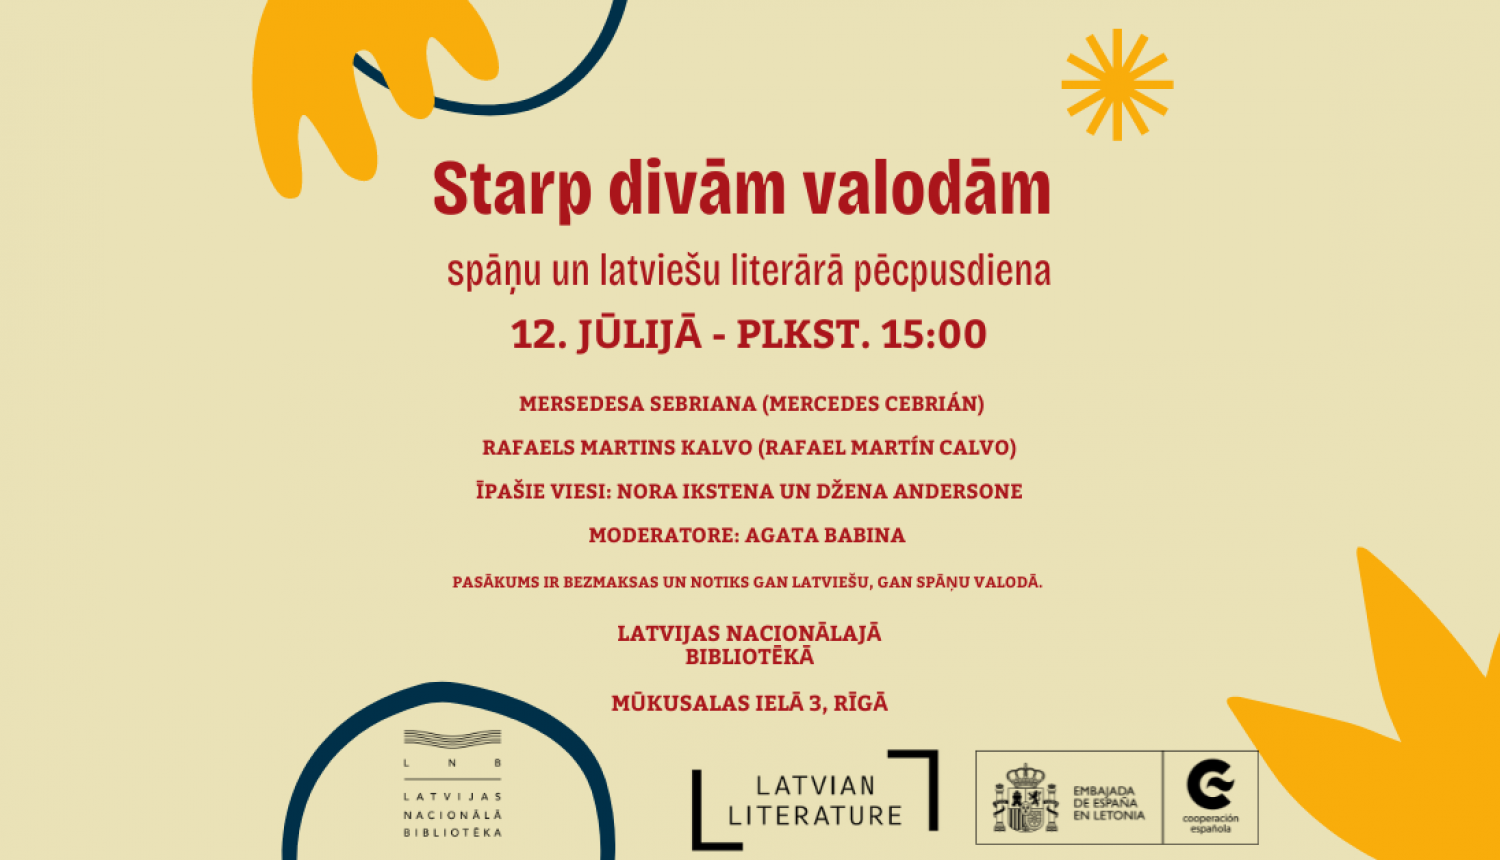 Starp divām valodām: spāņu un latviešu literārā pēcpusdiena Latvijas Nacionālajā bibliotēkā